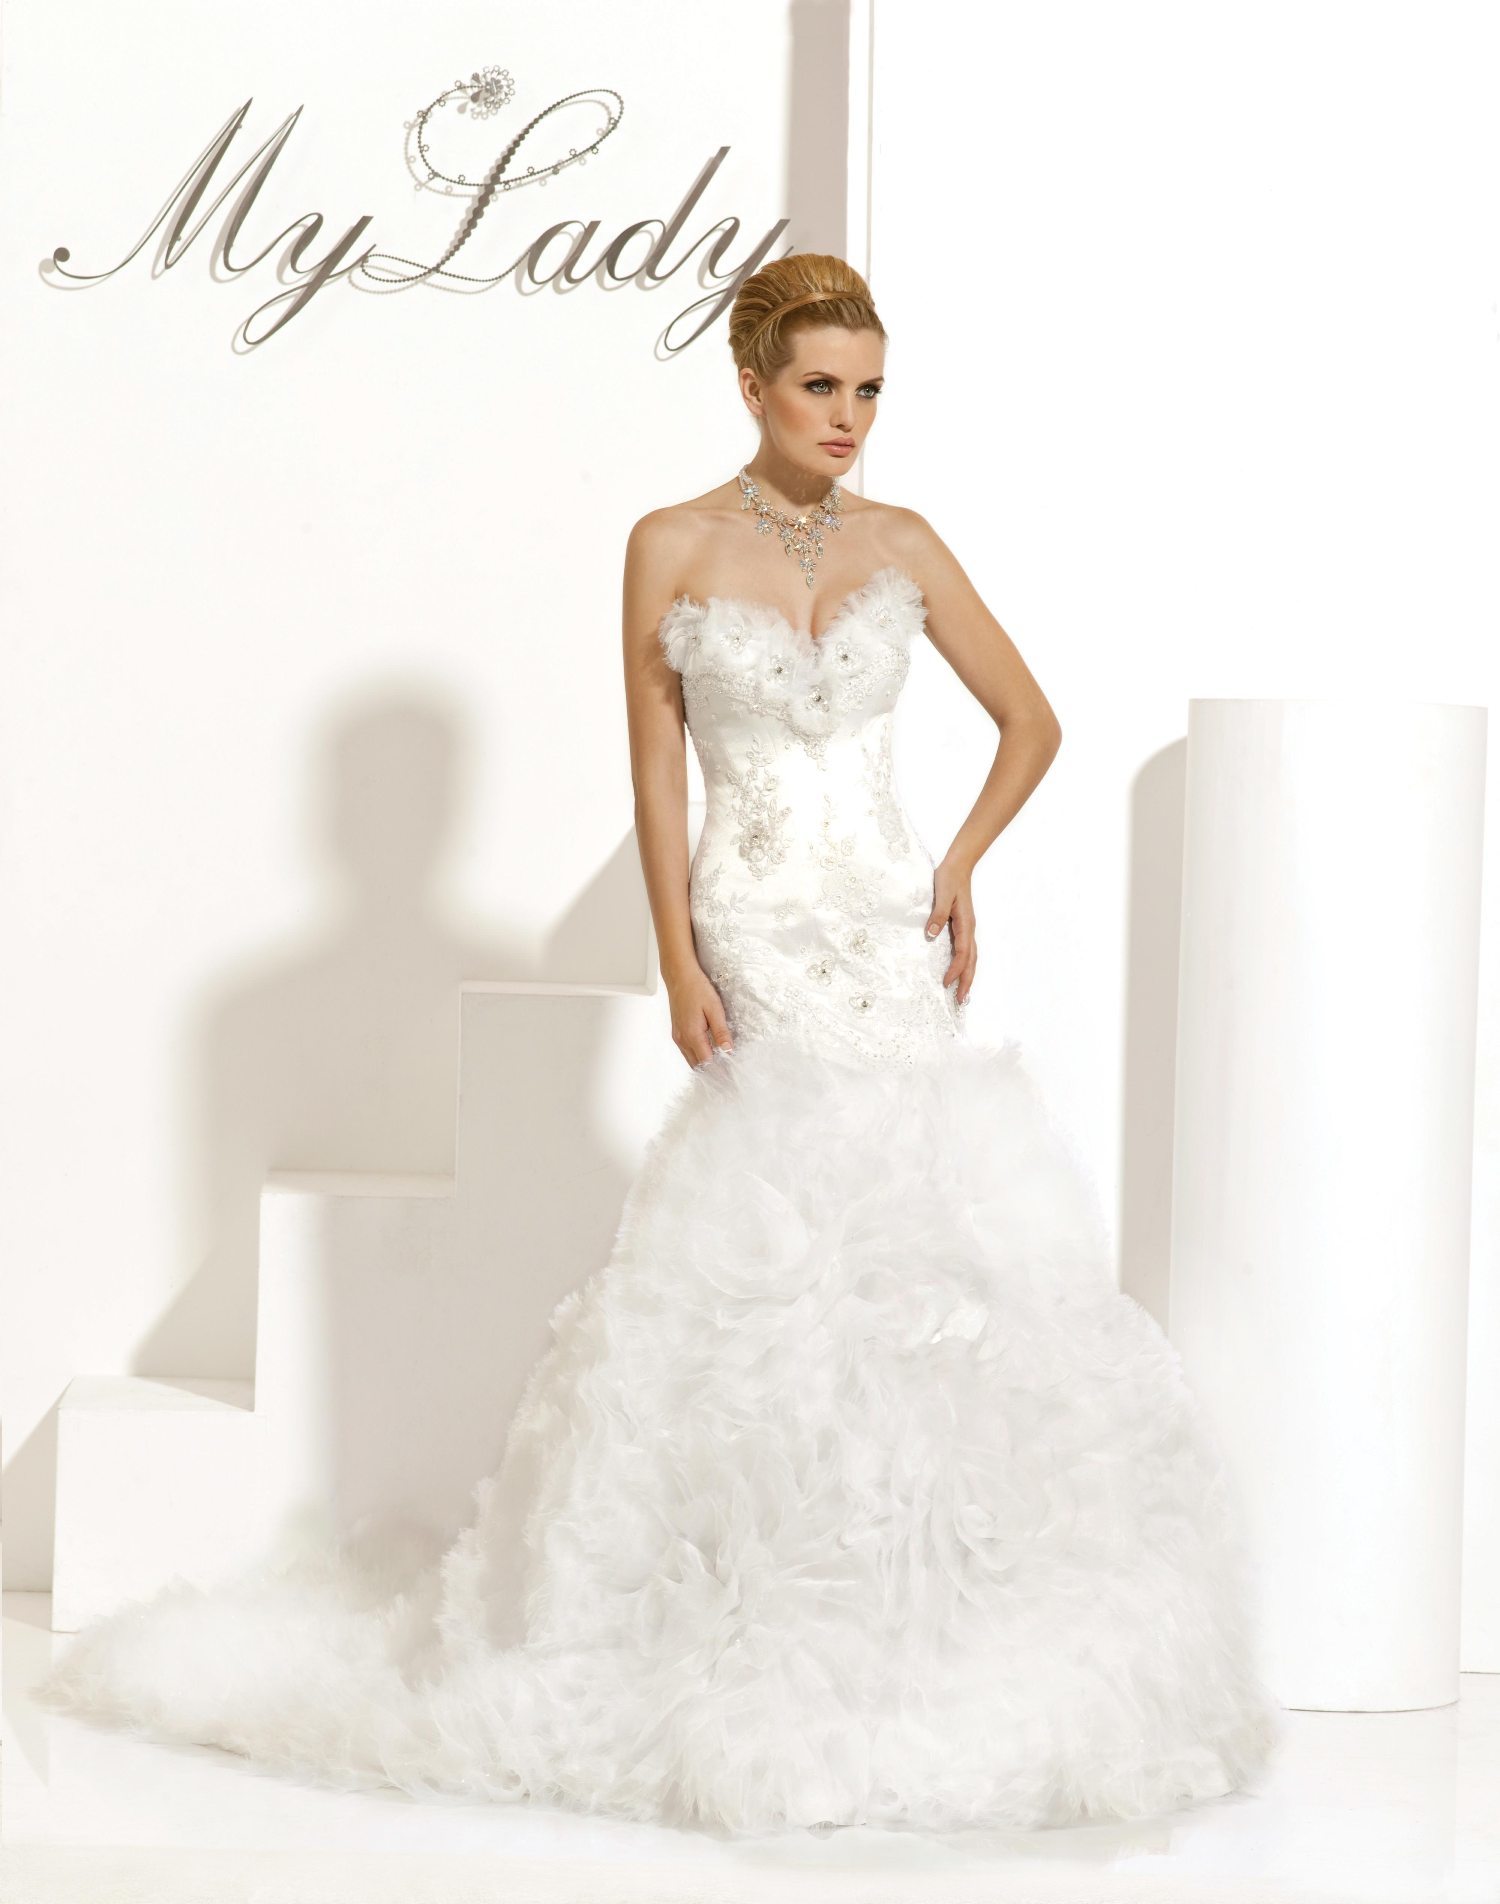 Wedding Dress - Lady Danielle Dress | MyLady Bridal Gown